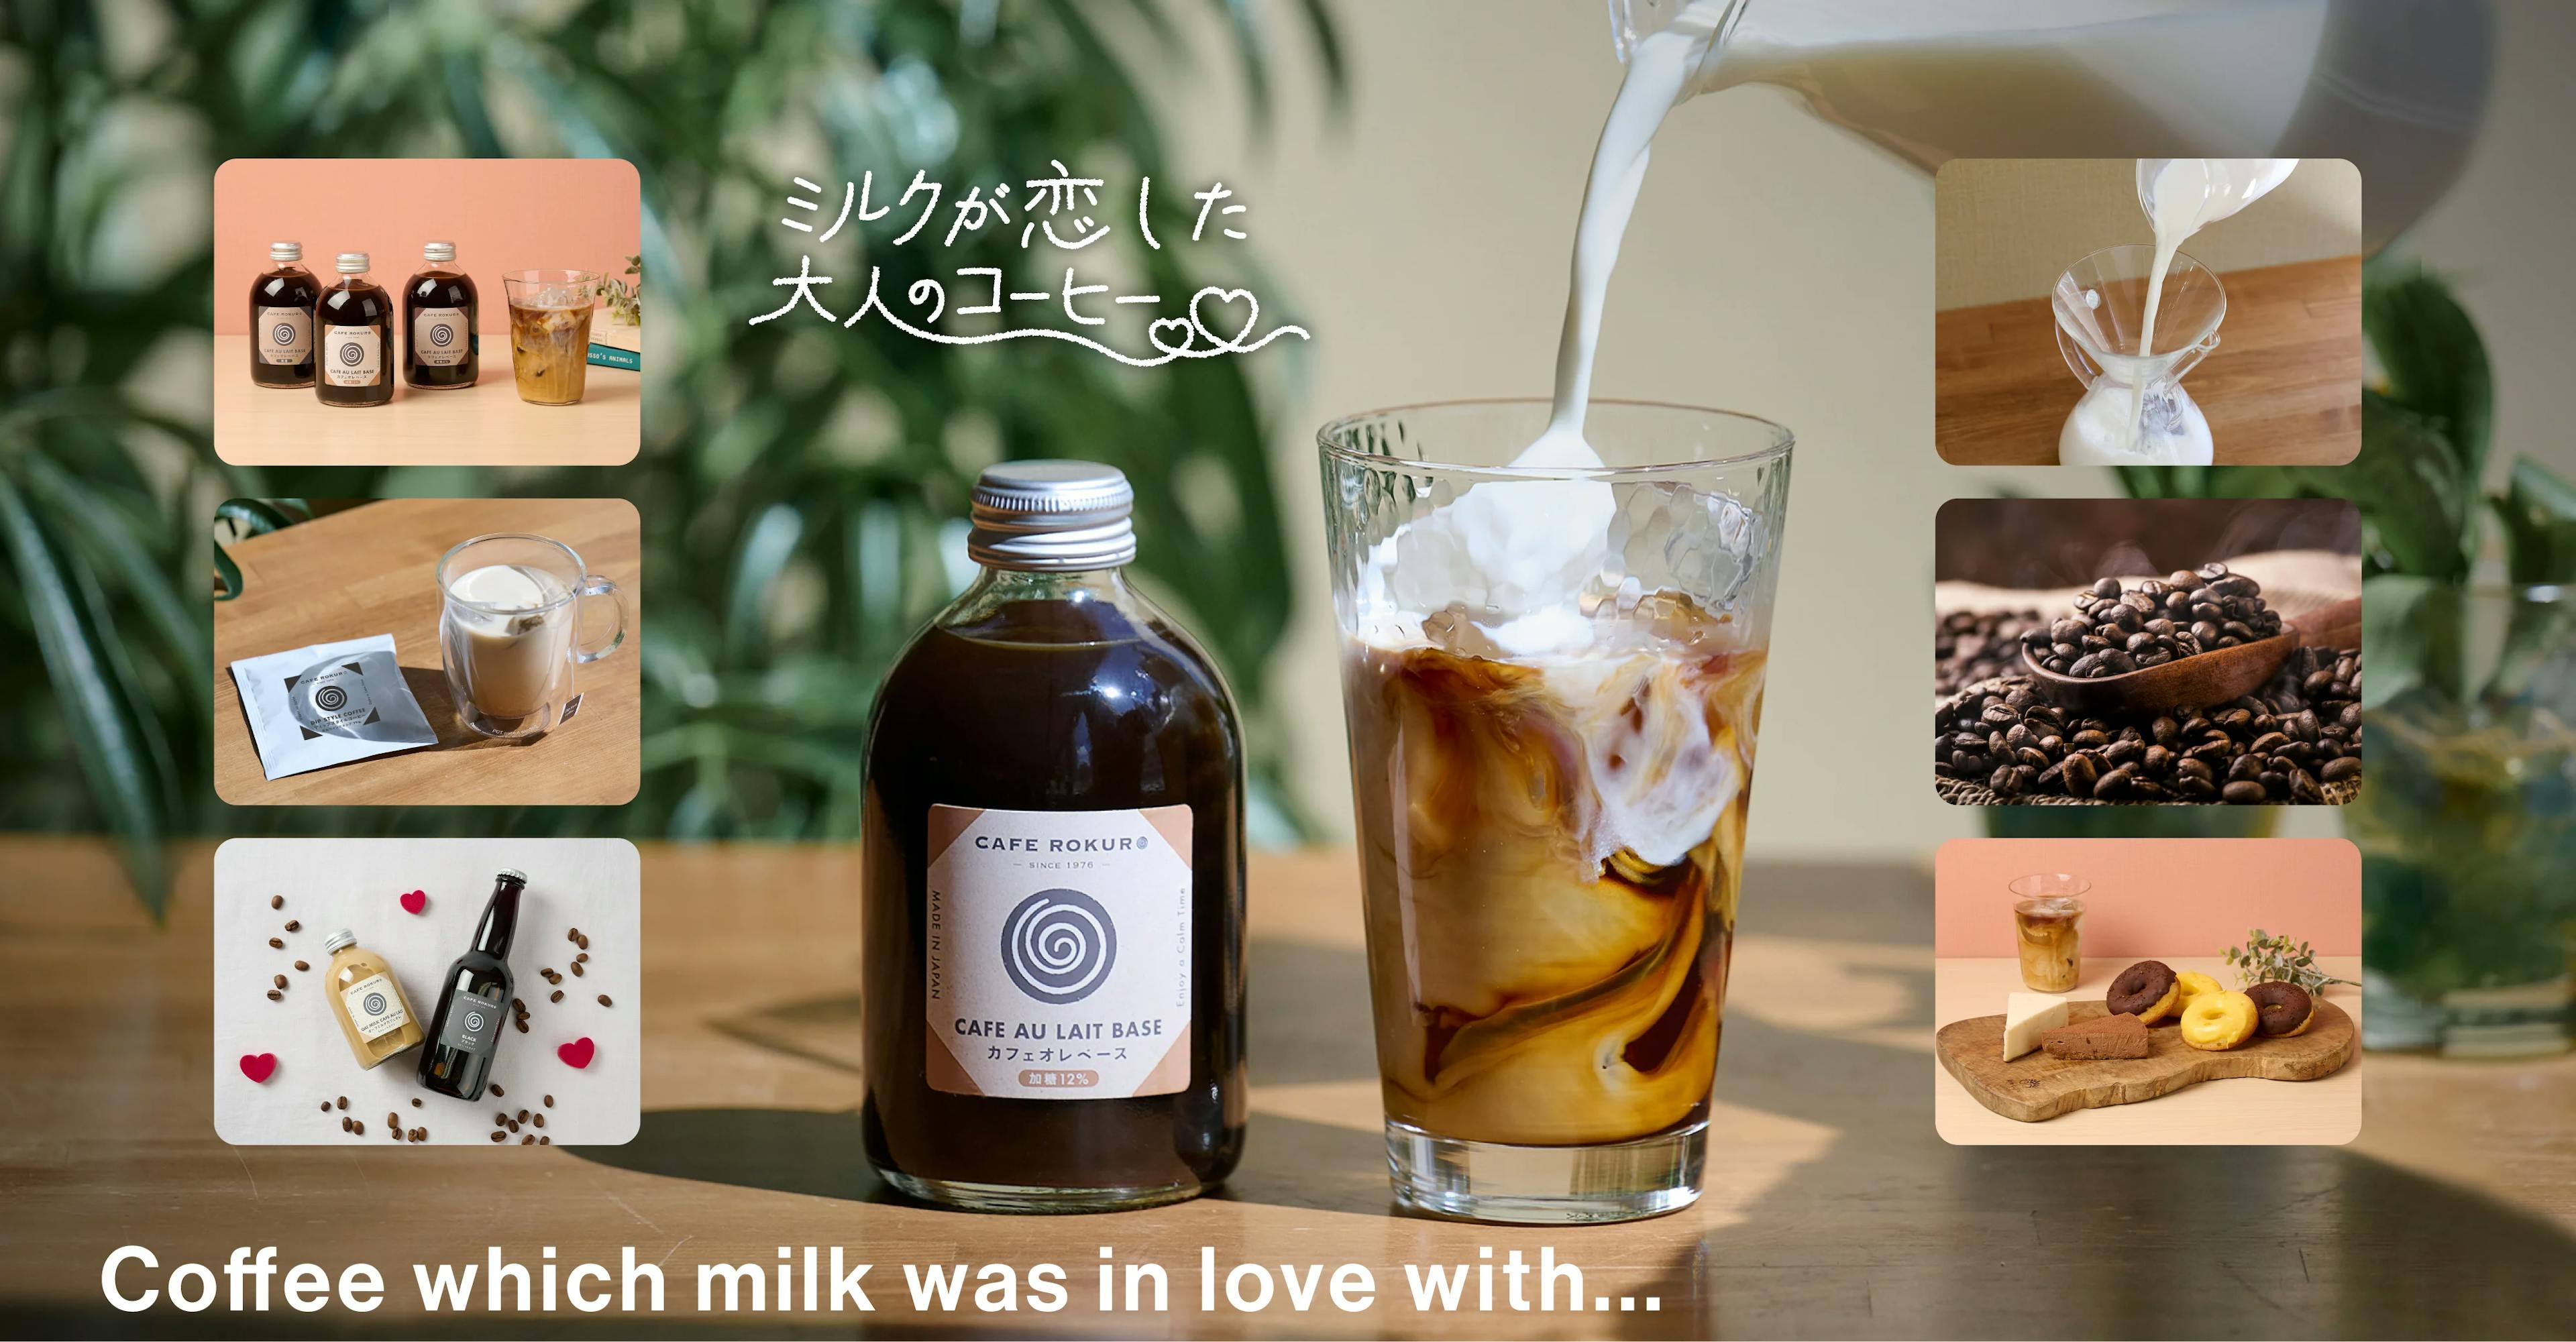 創業47年の老舗カフェ「カフェ呂久呂」がプライベートブランドを展開コクと深み溢れるカフェオレベース『ミルクが恋した大人のコーヒー』